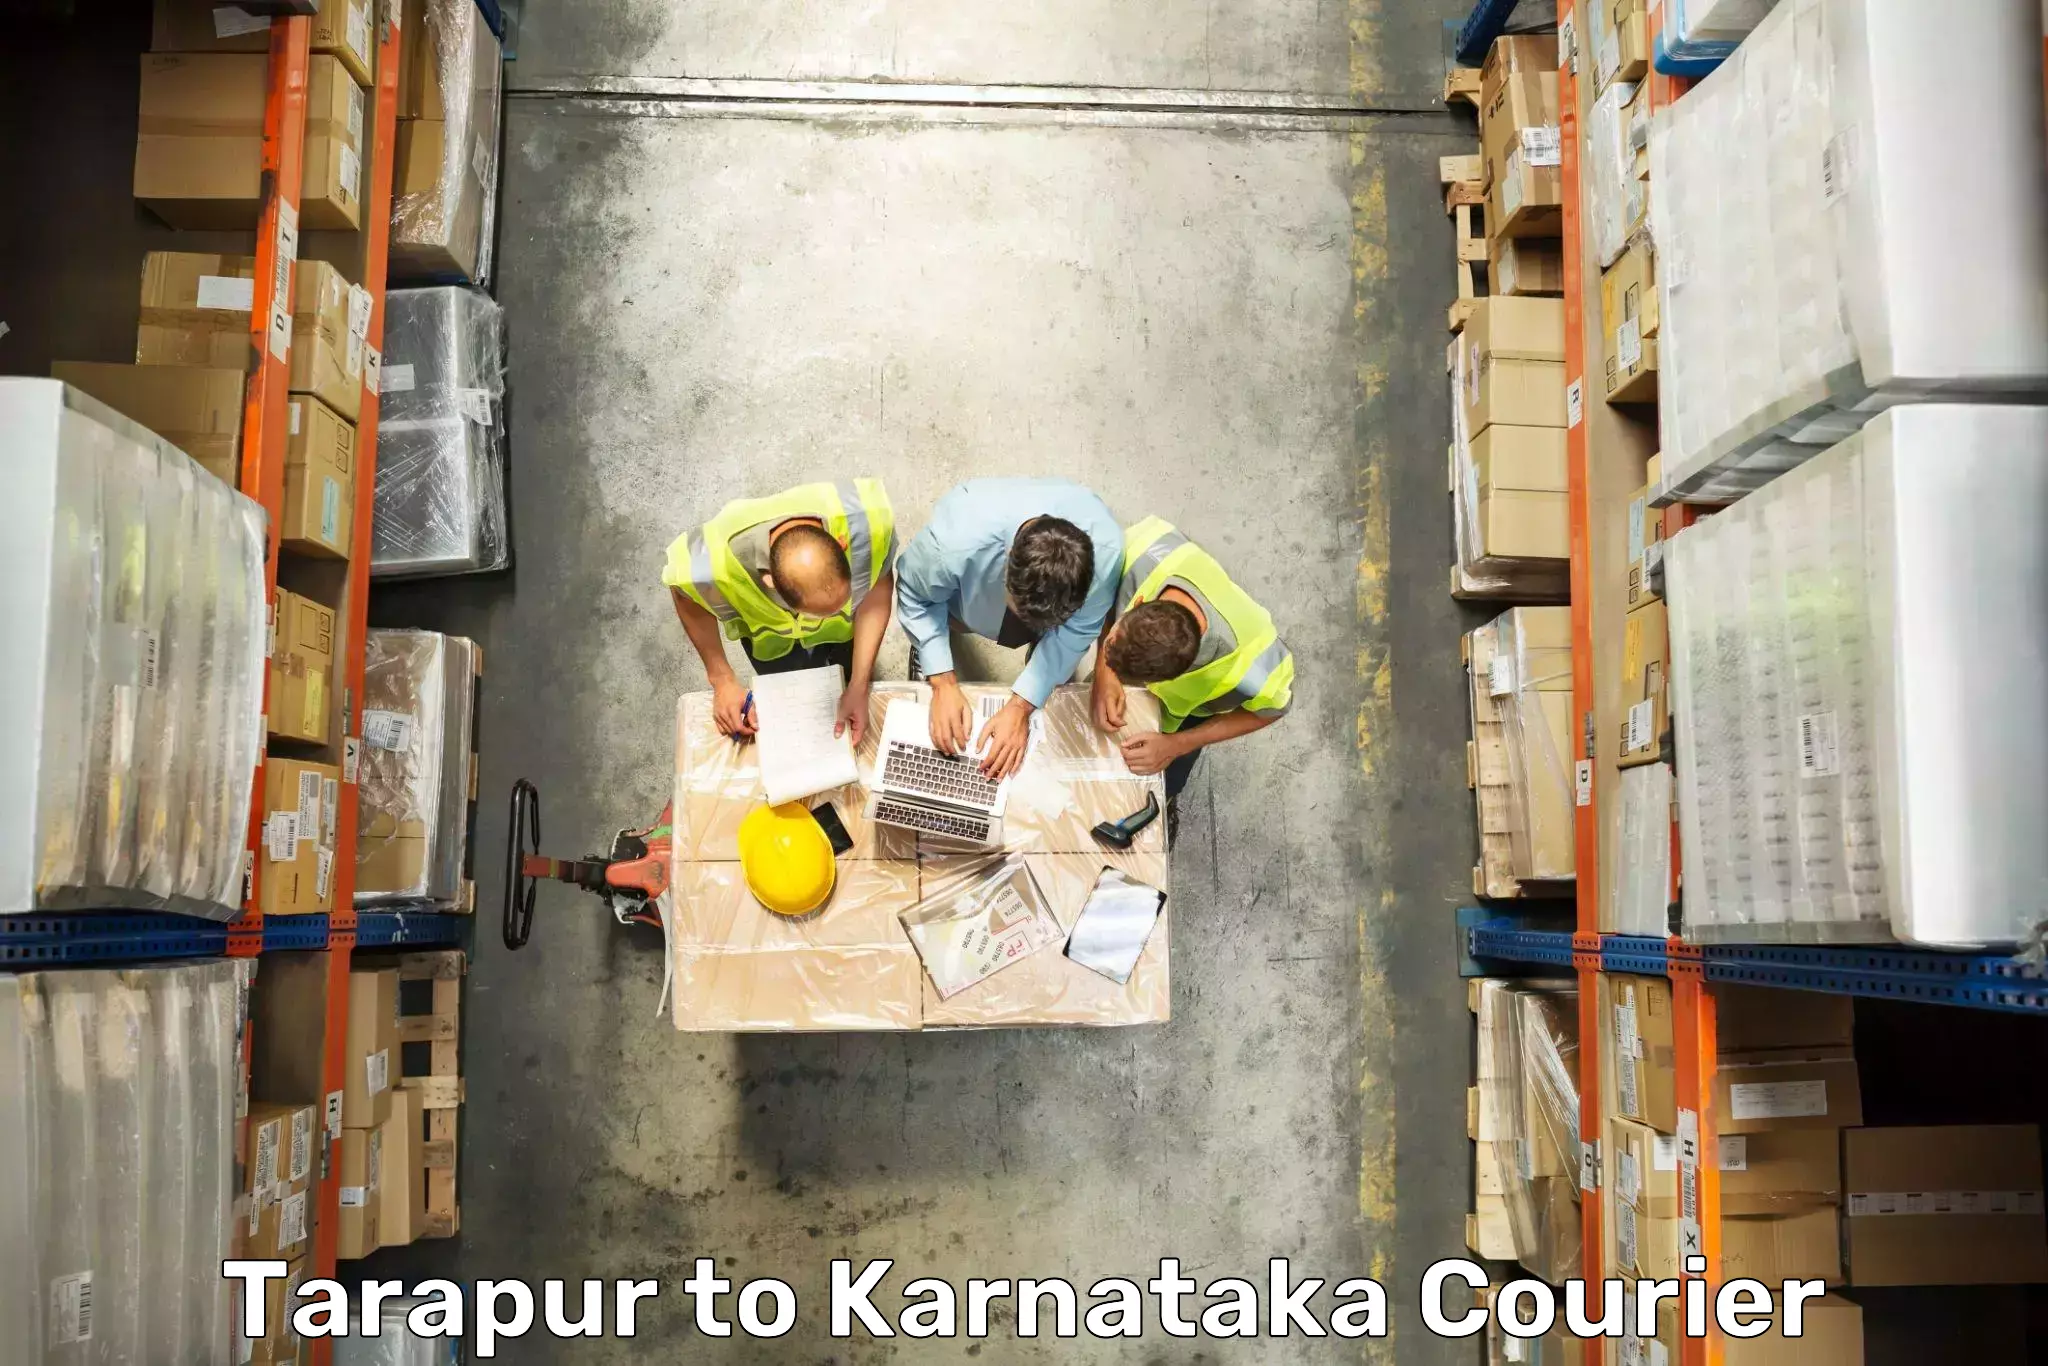 Electronic items luggage shipping Tarapur to Bangalore